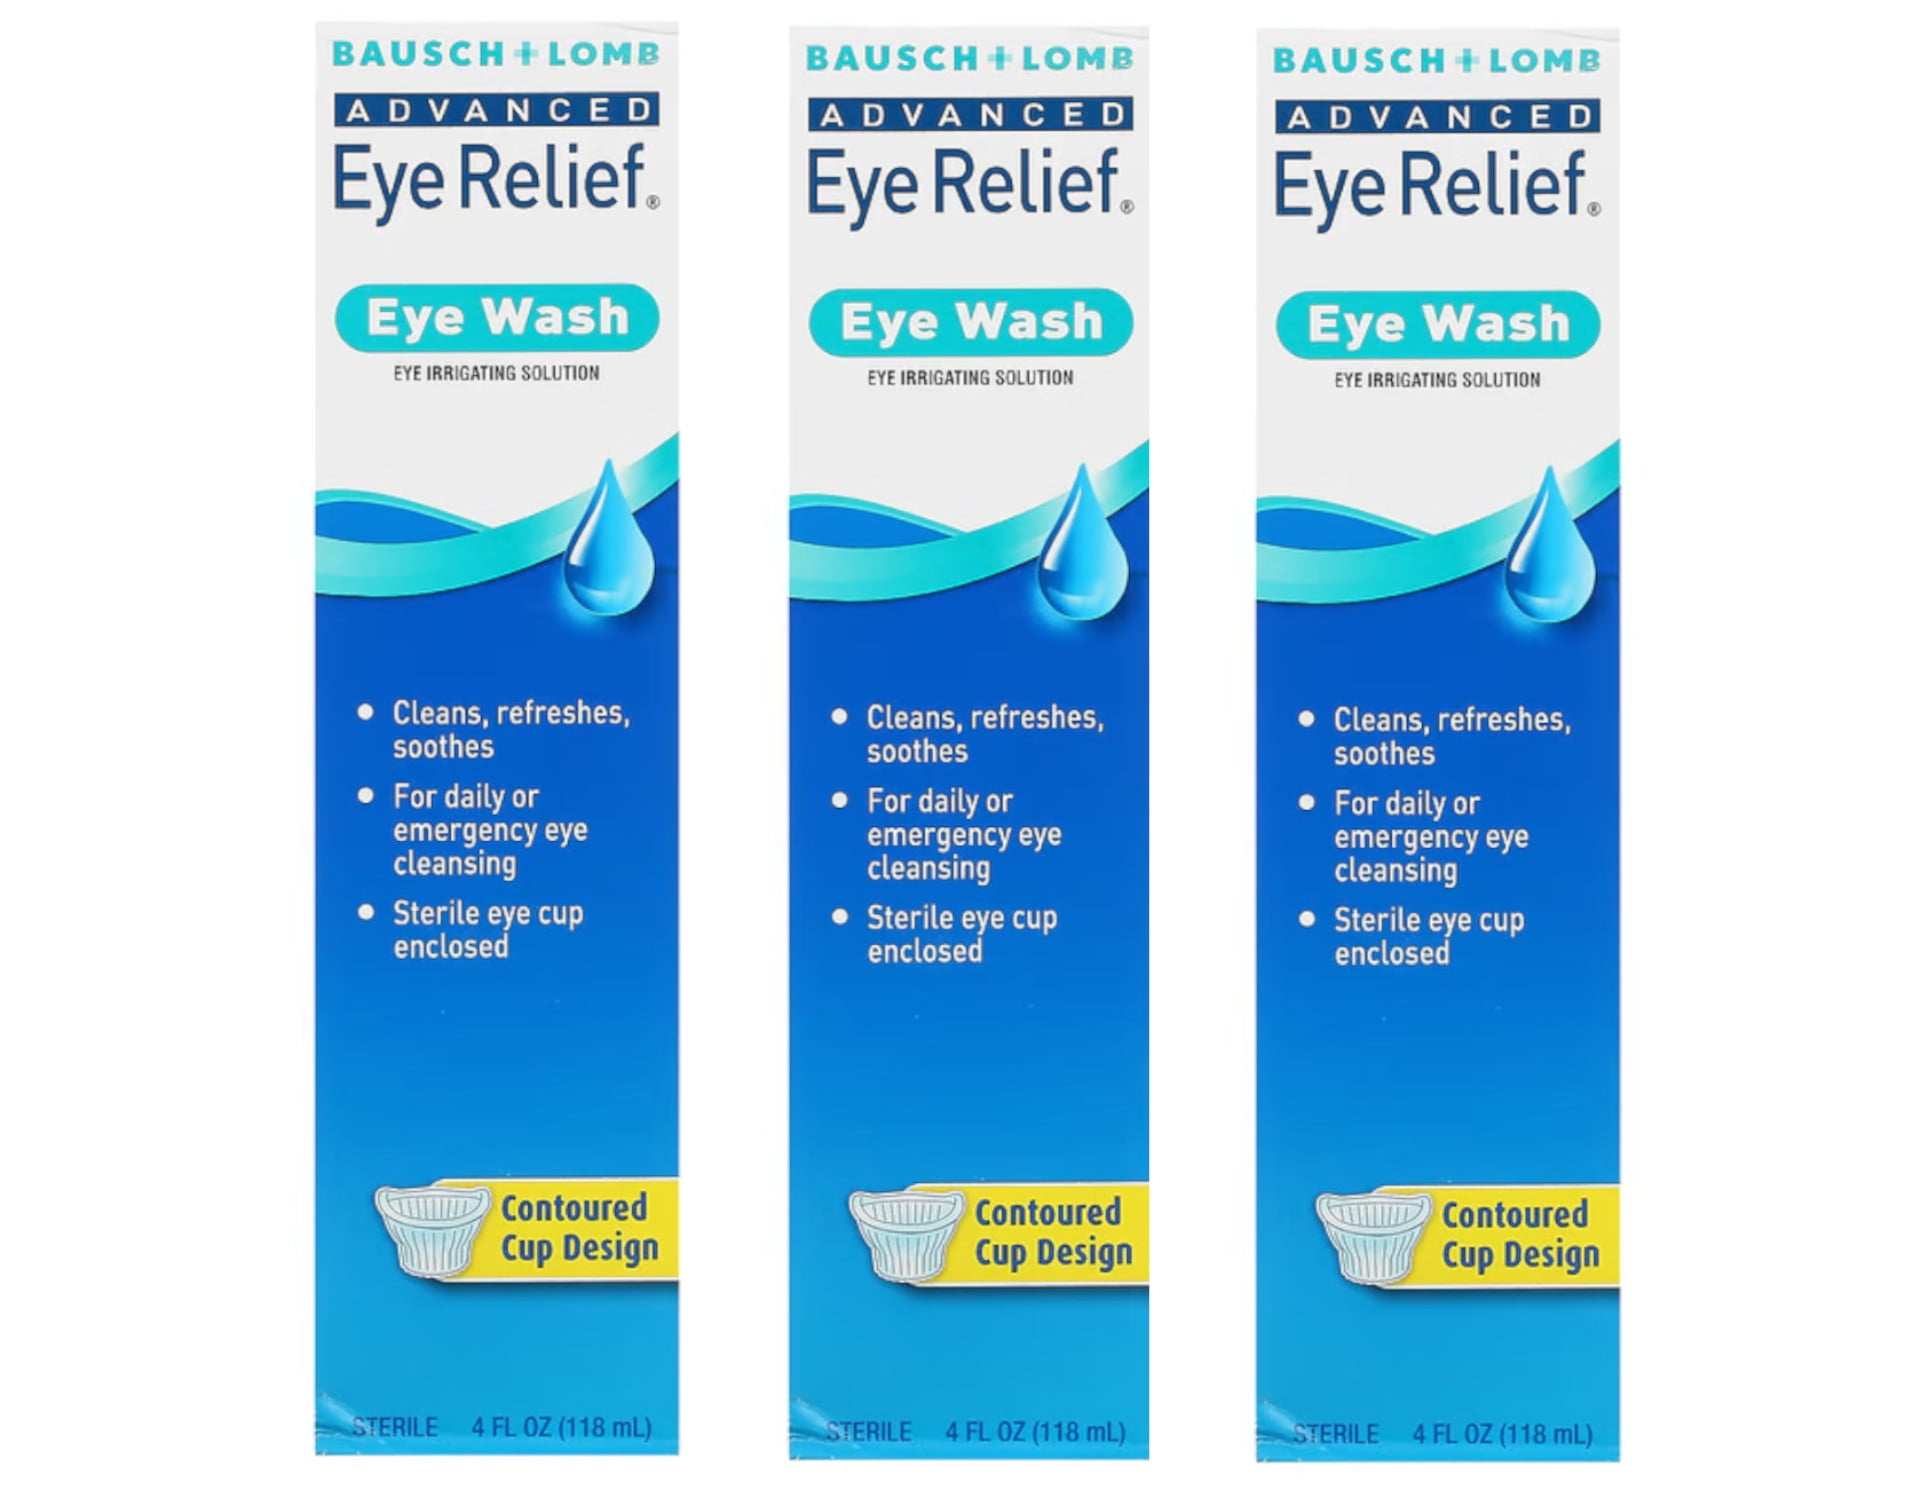 Advanced Eye Relief Eye Wash